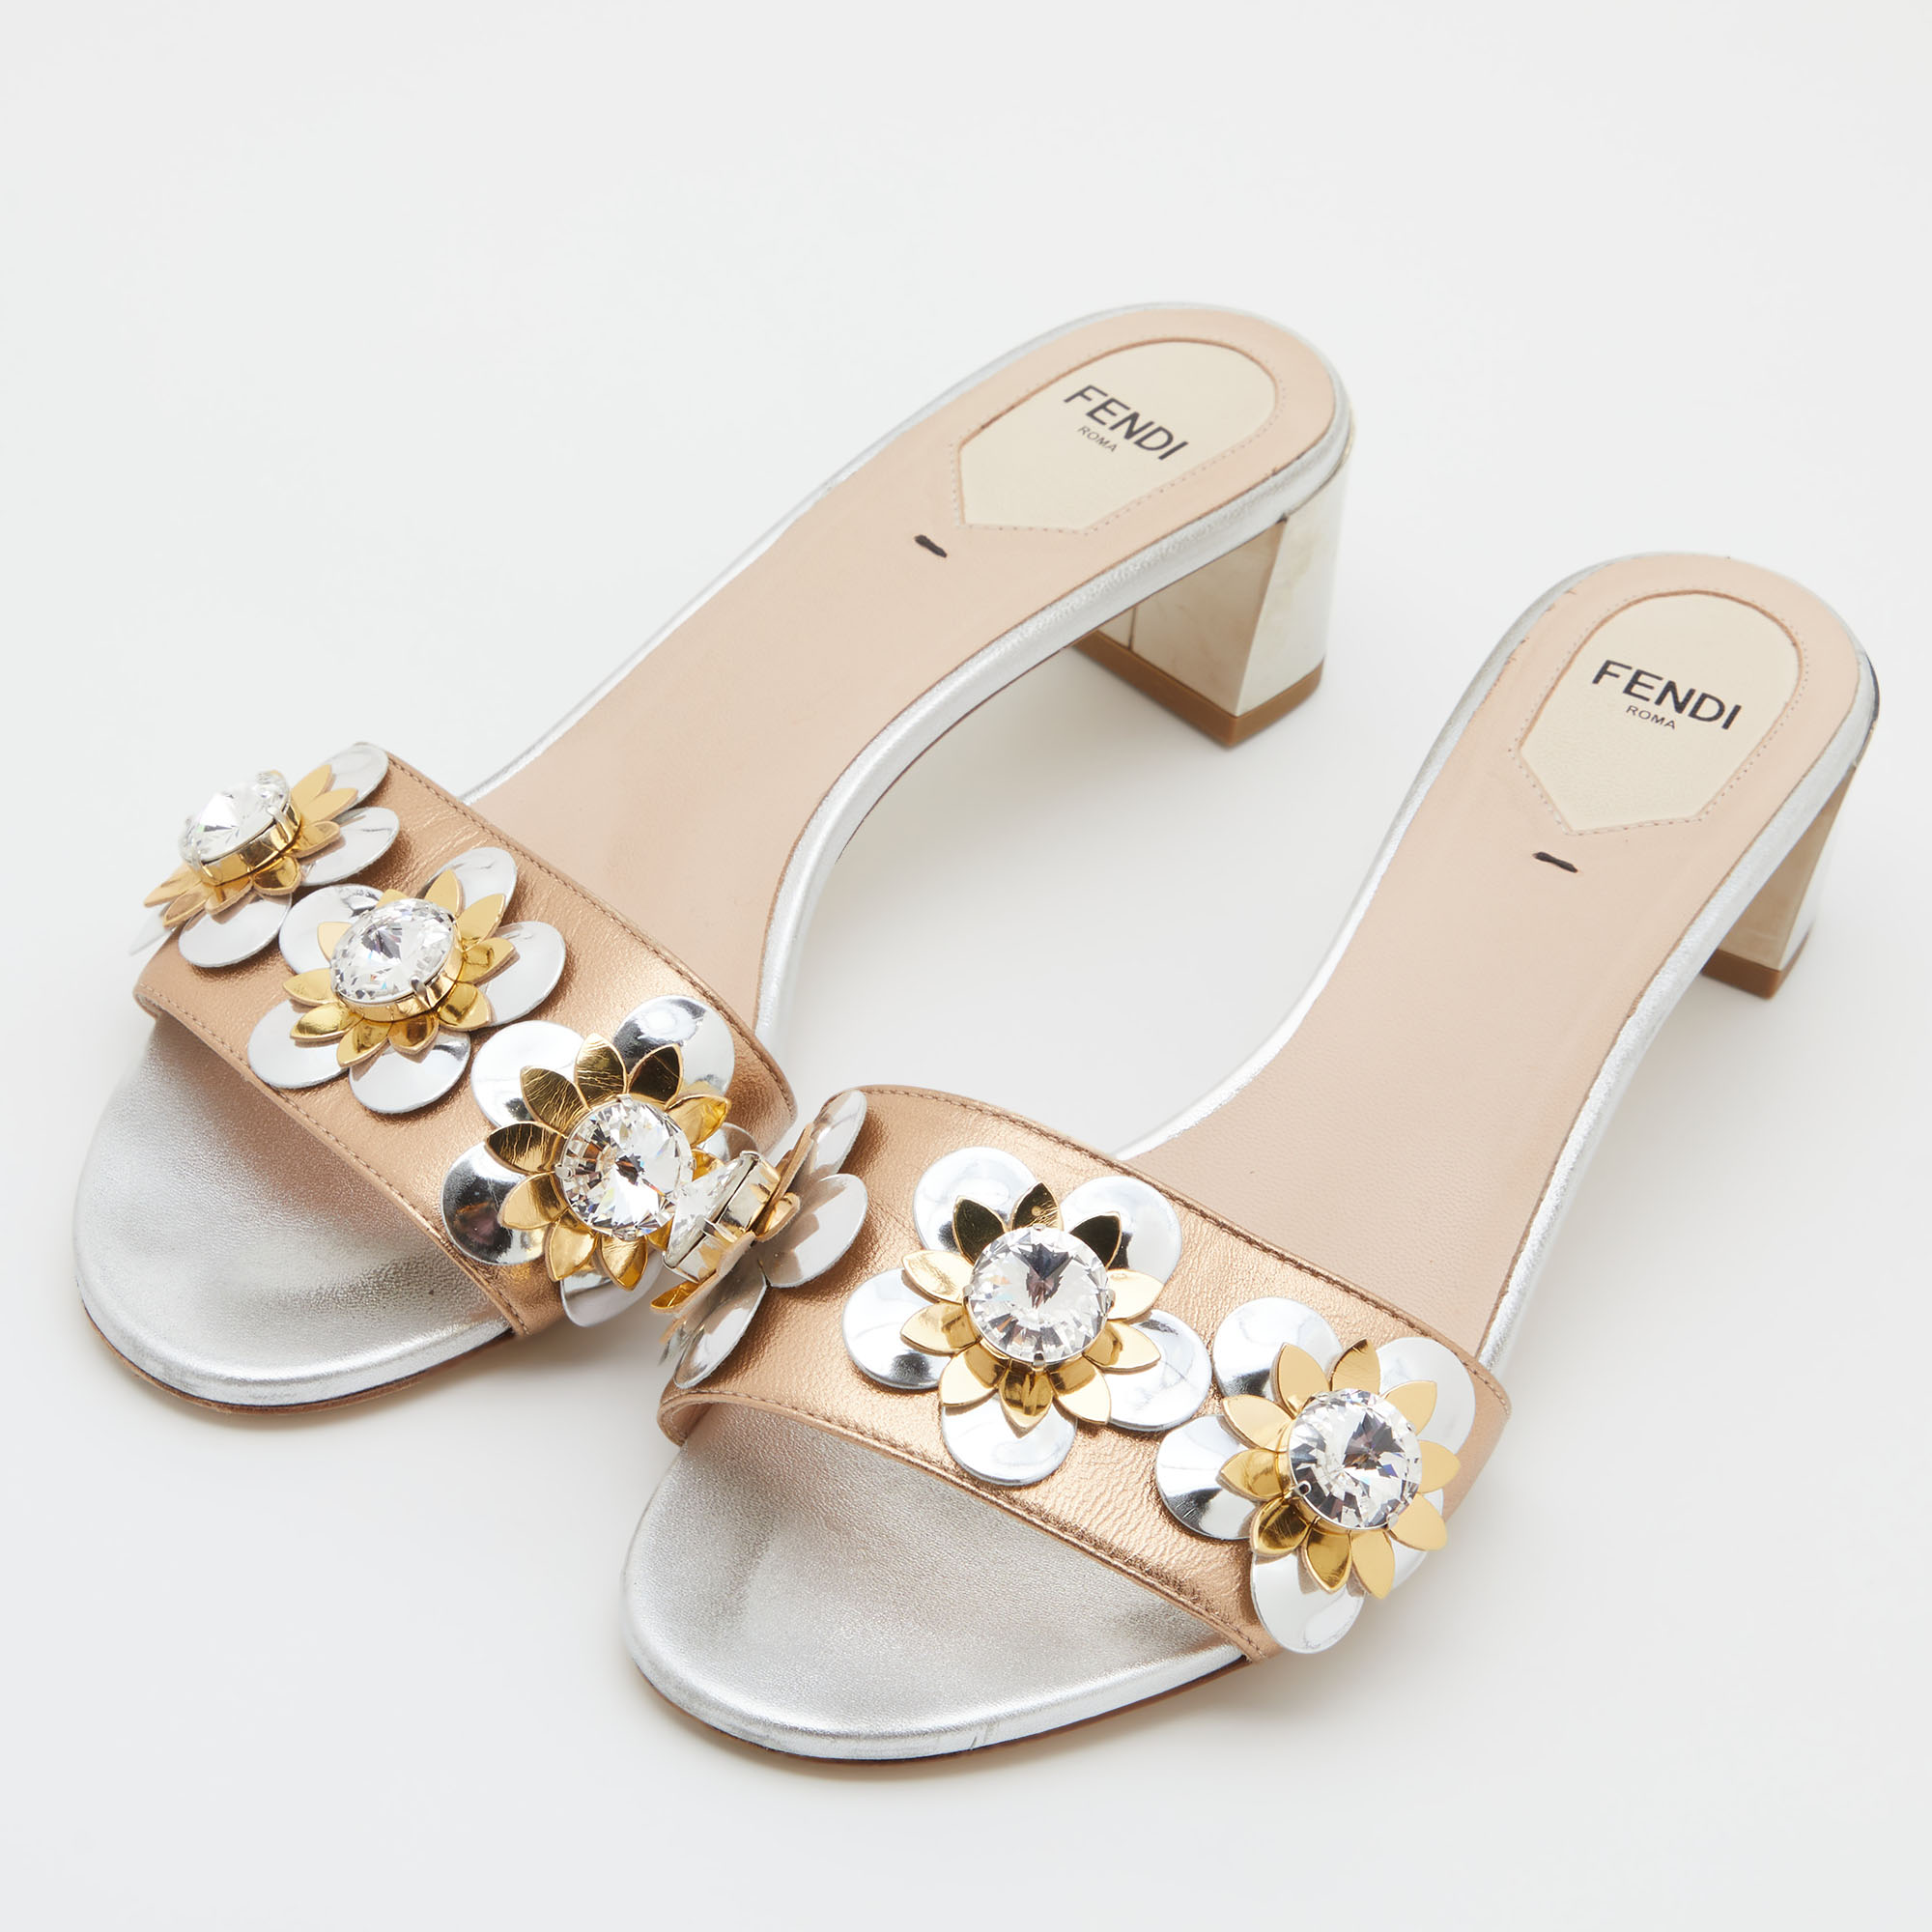 

Fendi Metallic Gold/Silver Leather Flowerland Crystal Embellished Slide Sandals Size